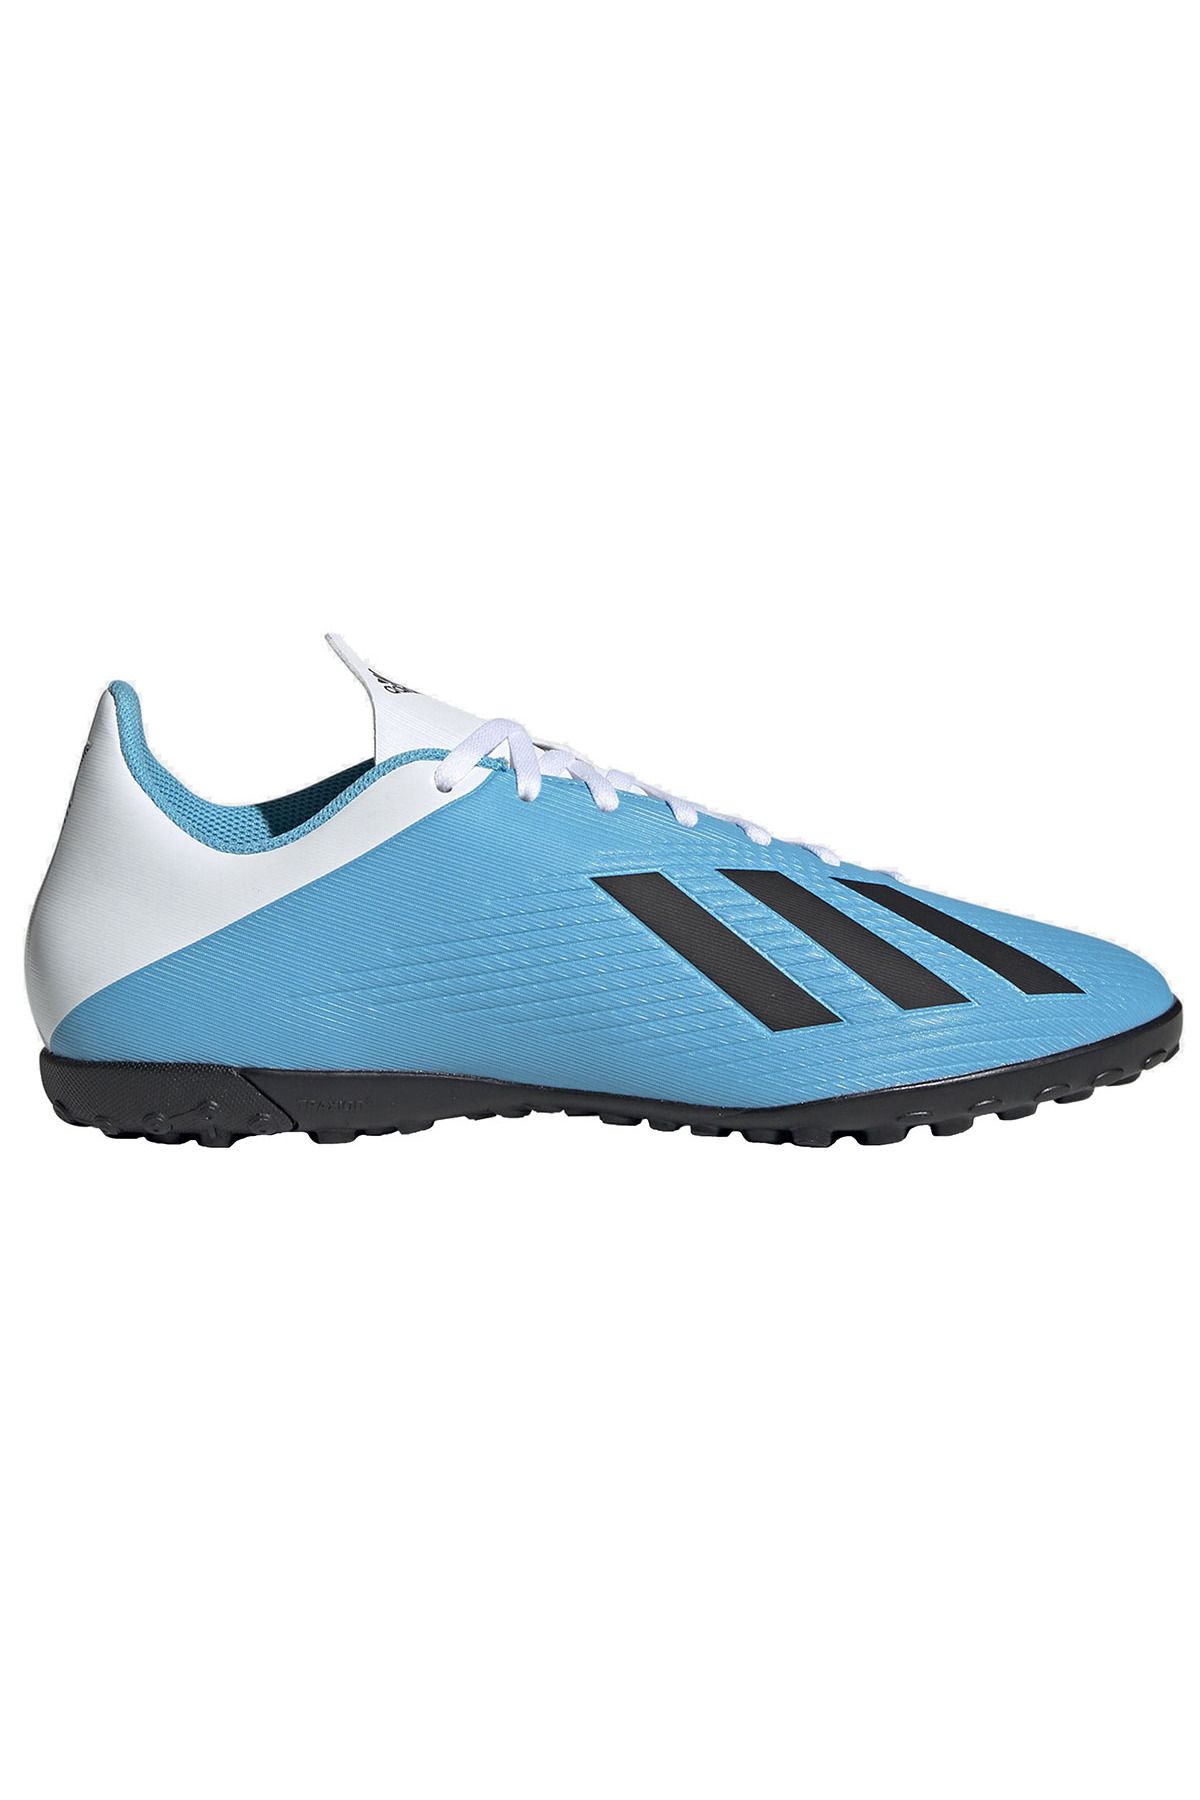 adidas X 19.4 Tf Çocuk Mavi Halı Saha Futbol Ayakkabısı F35345